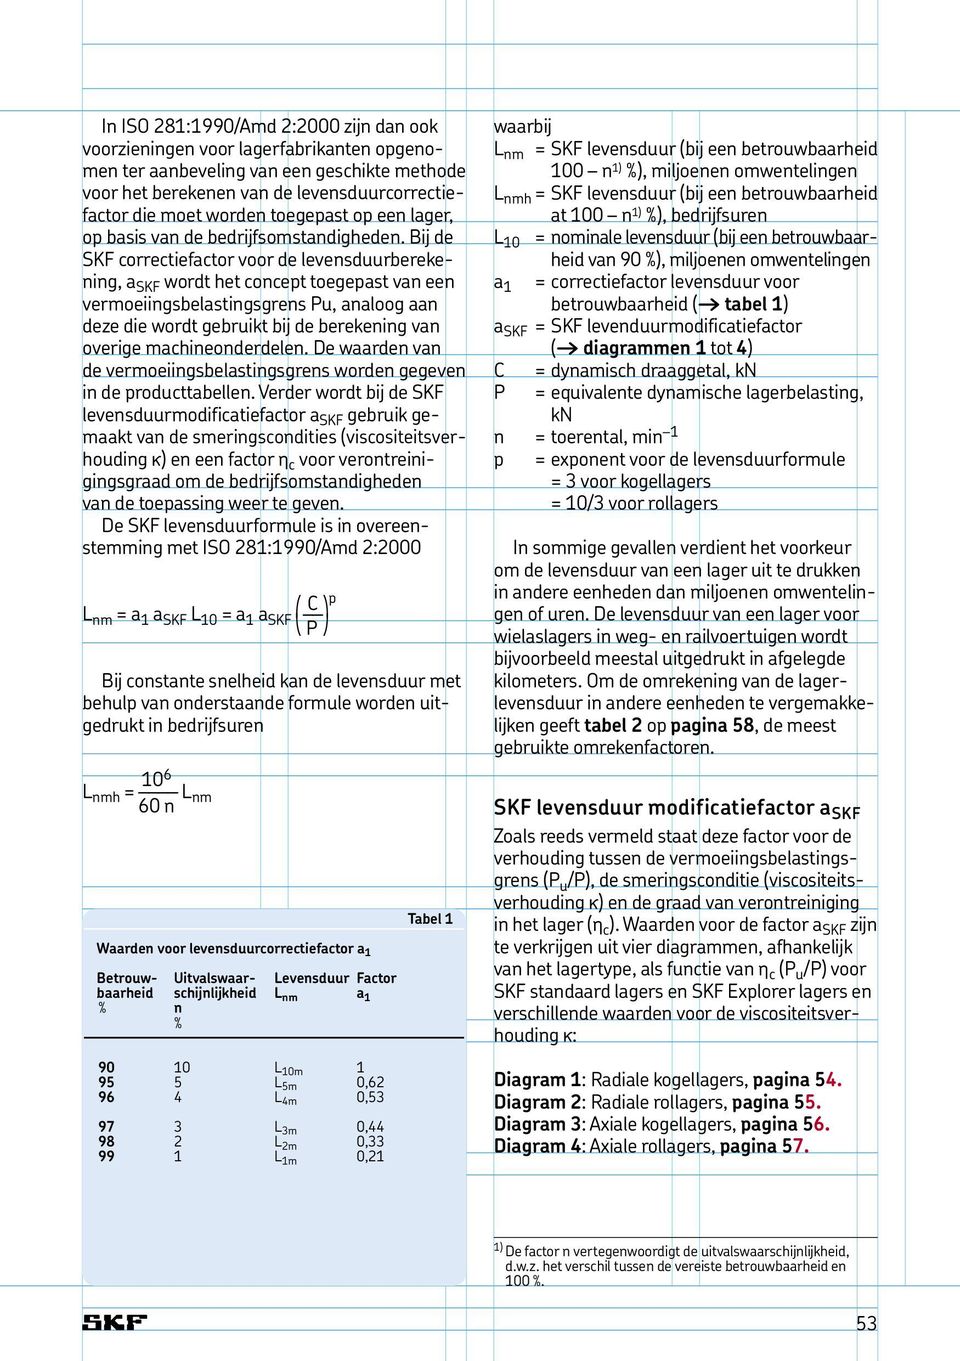 Bij de SKF correctiefactor voor de levensduurberekening, a SKF wordt het concept toegepast van een vermoeiingsbelastingsgrens Pu, analoog aan deze die wordt gebruikt bij de berekening van overige